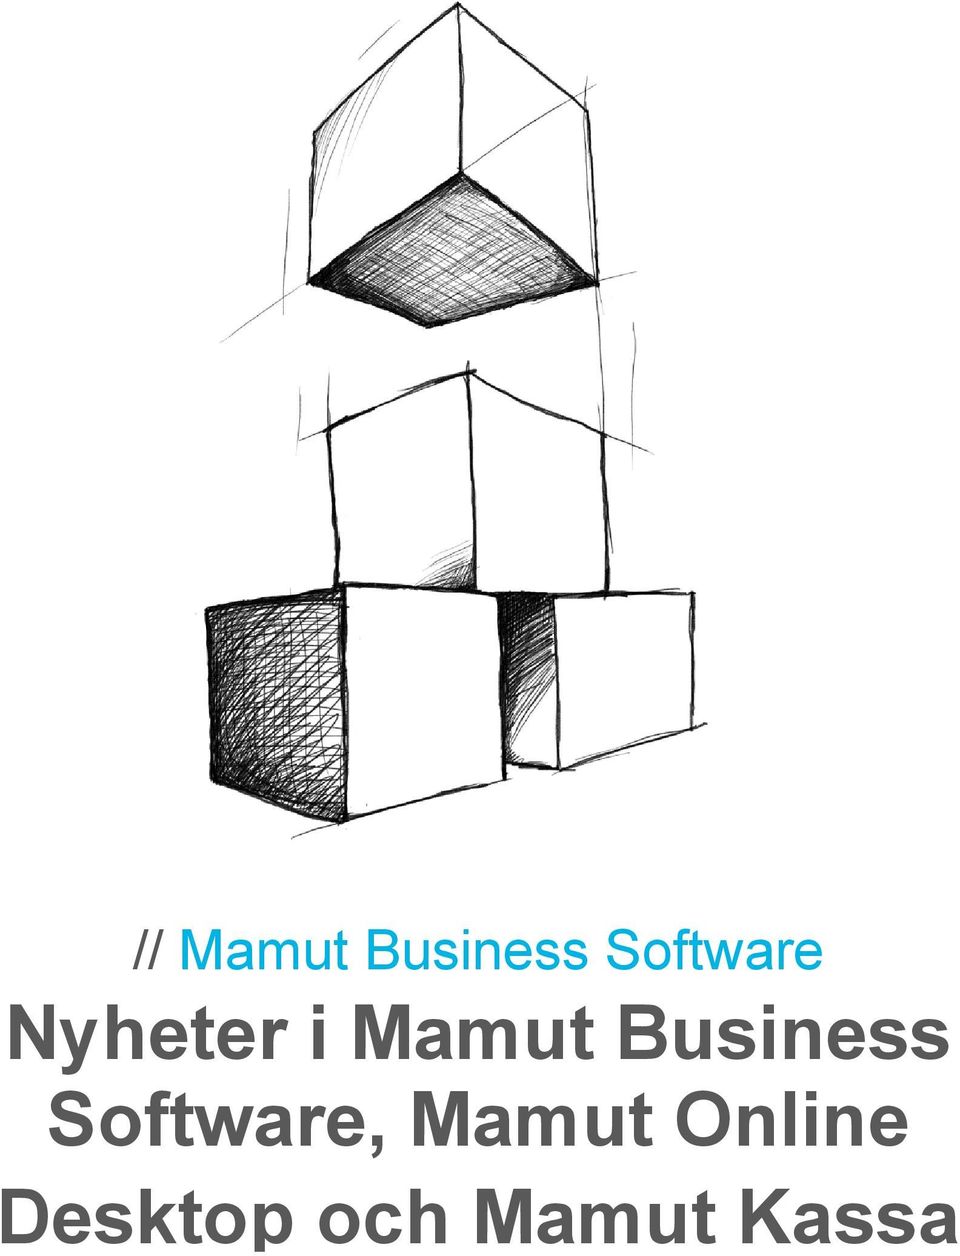 Business Software, Mamut